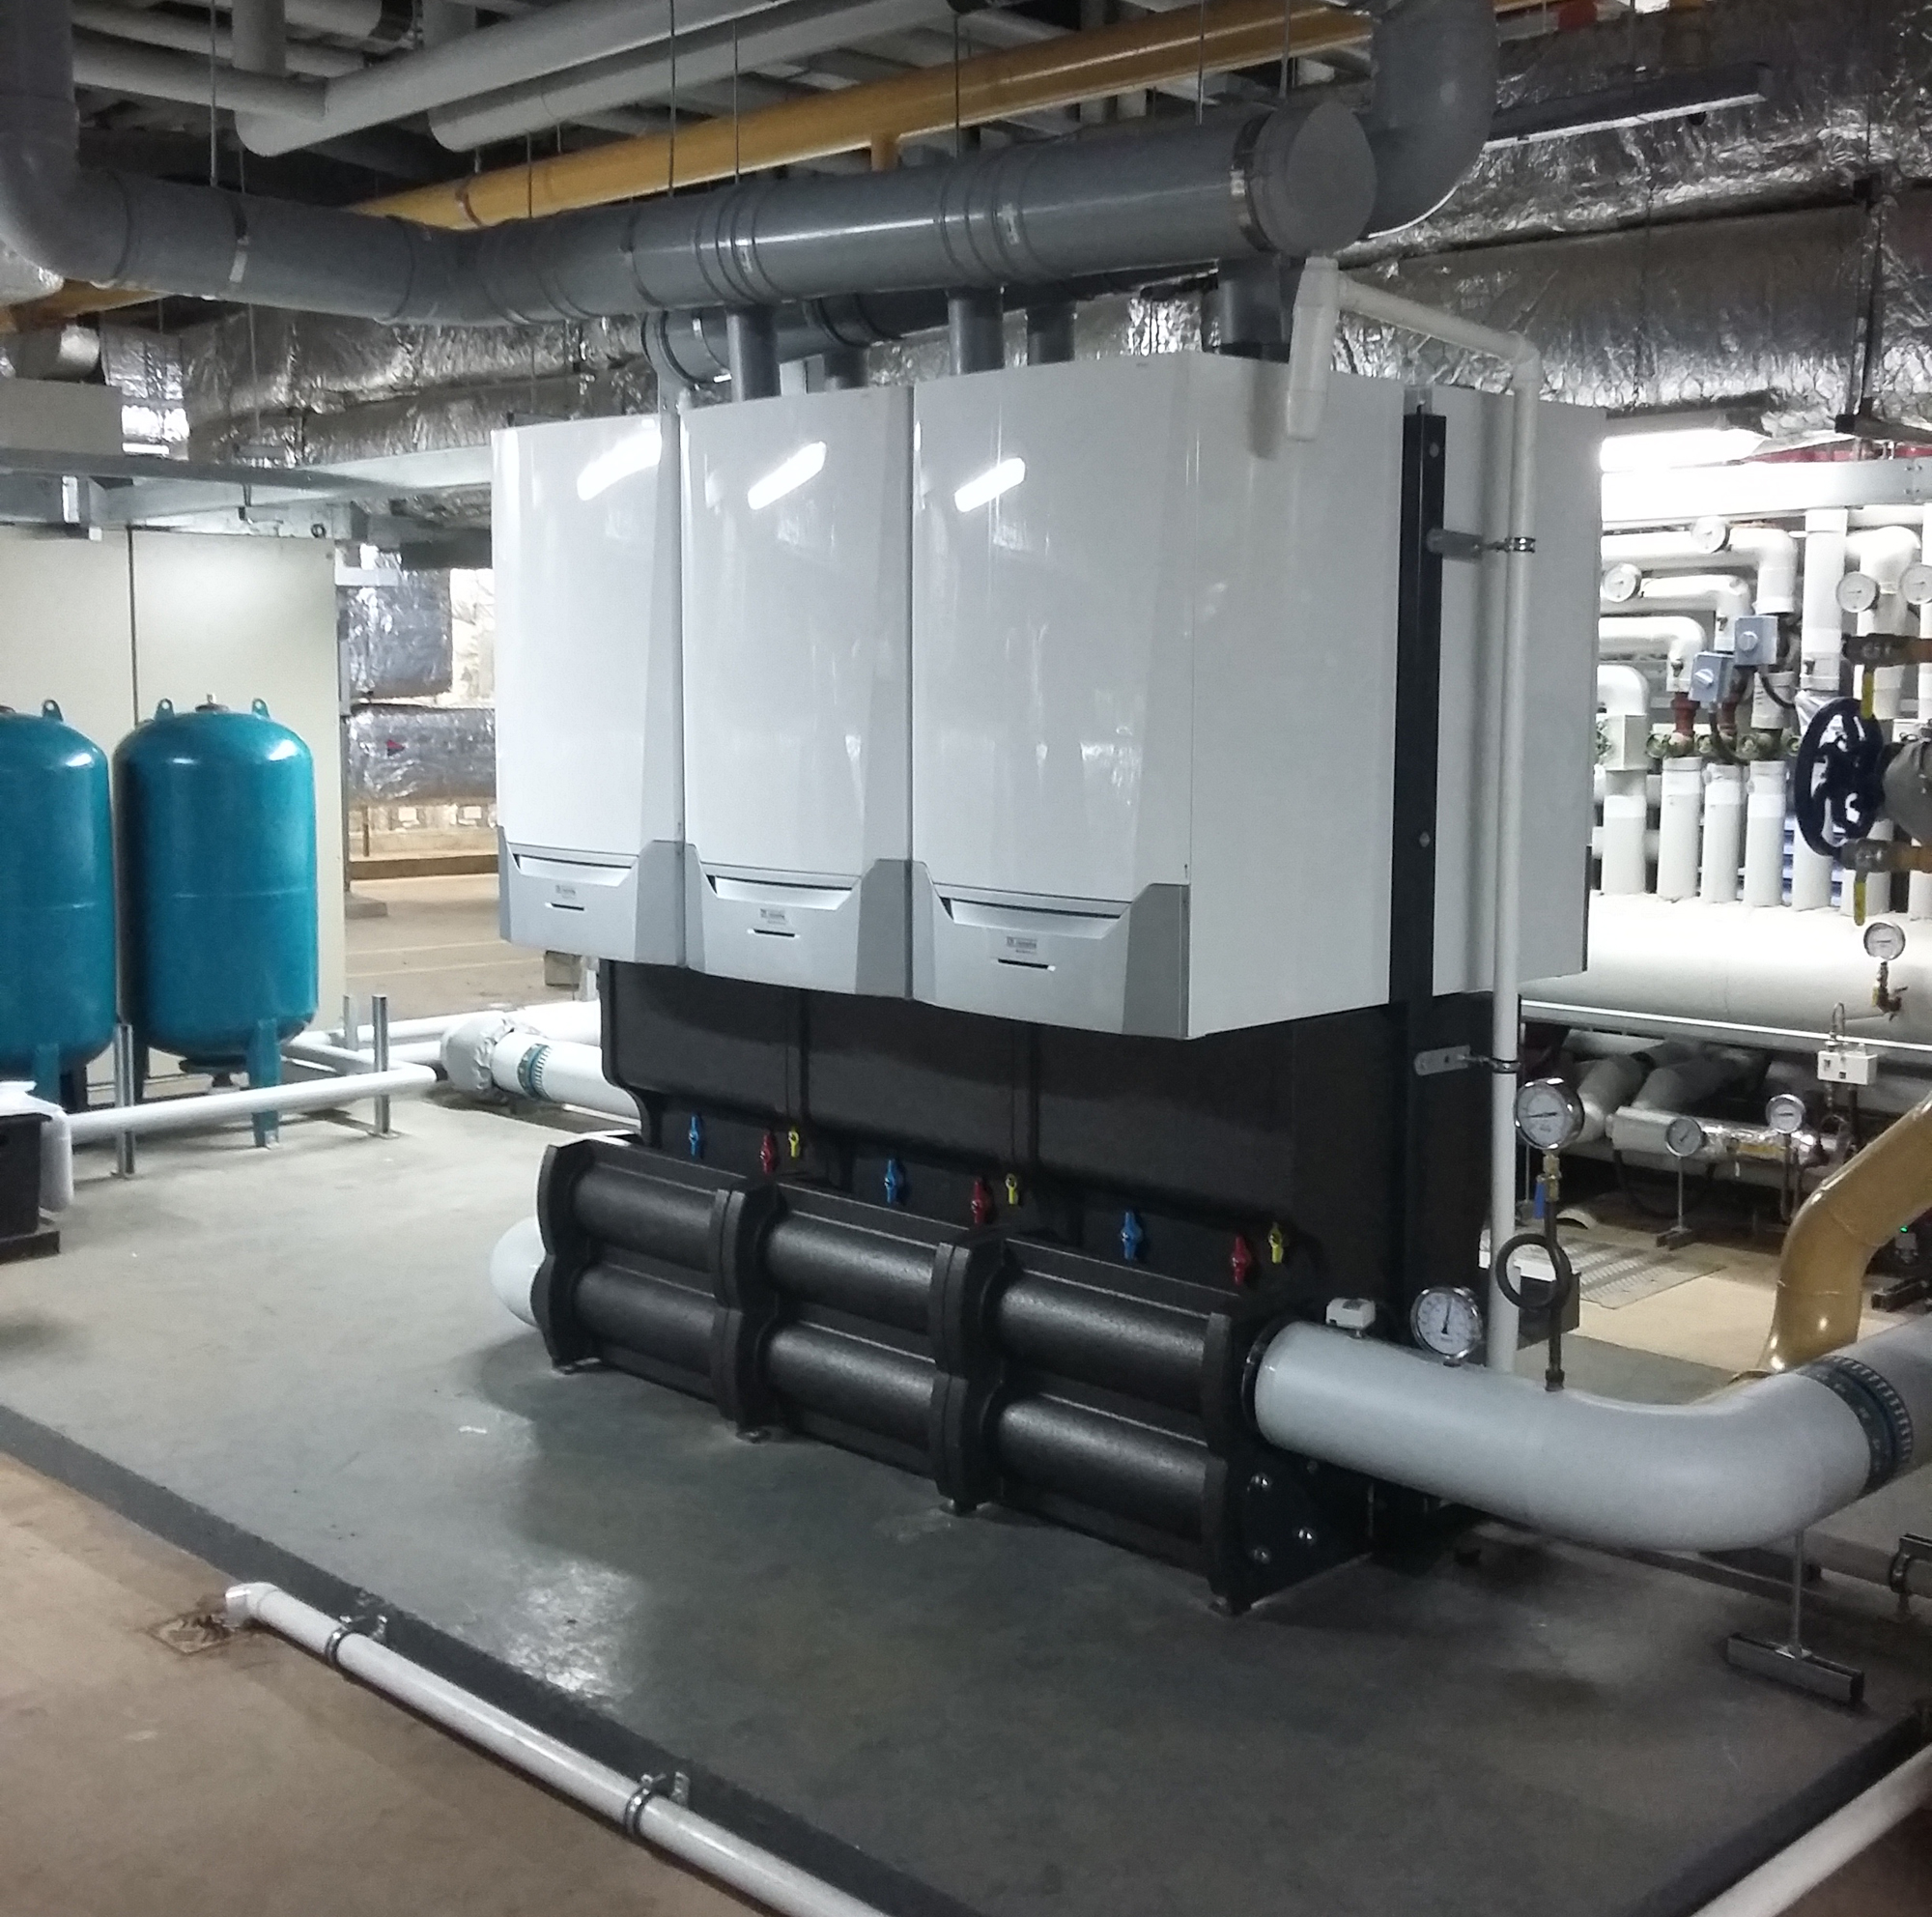 Keele University optimises heating efficiency with new boilers